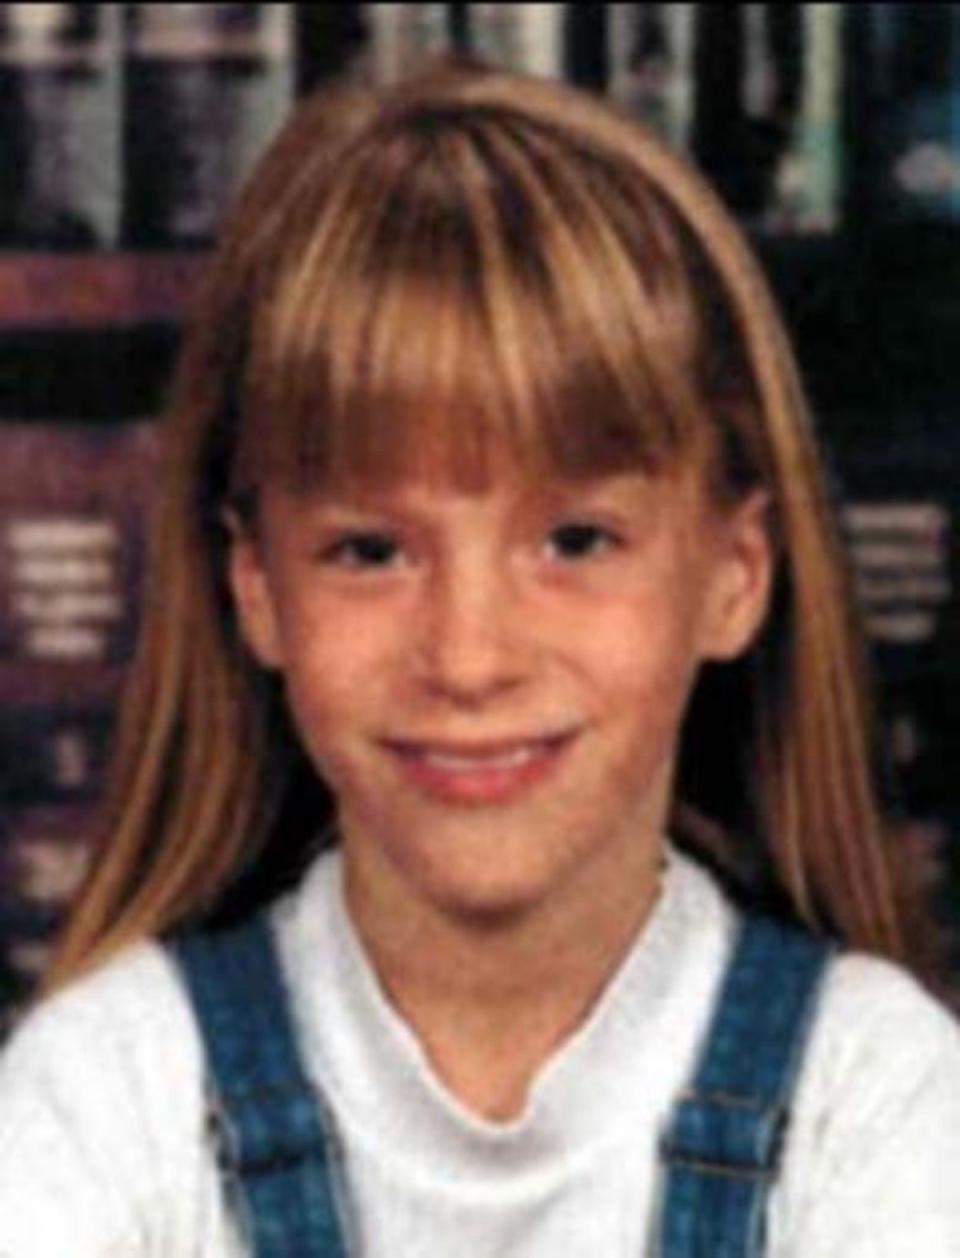 Alex Carter tenía 10 años cuando desapareció en agosto de 2000 (FBI)